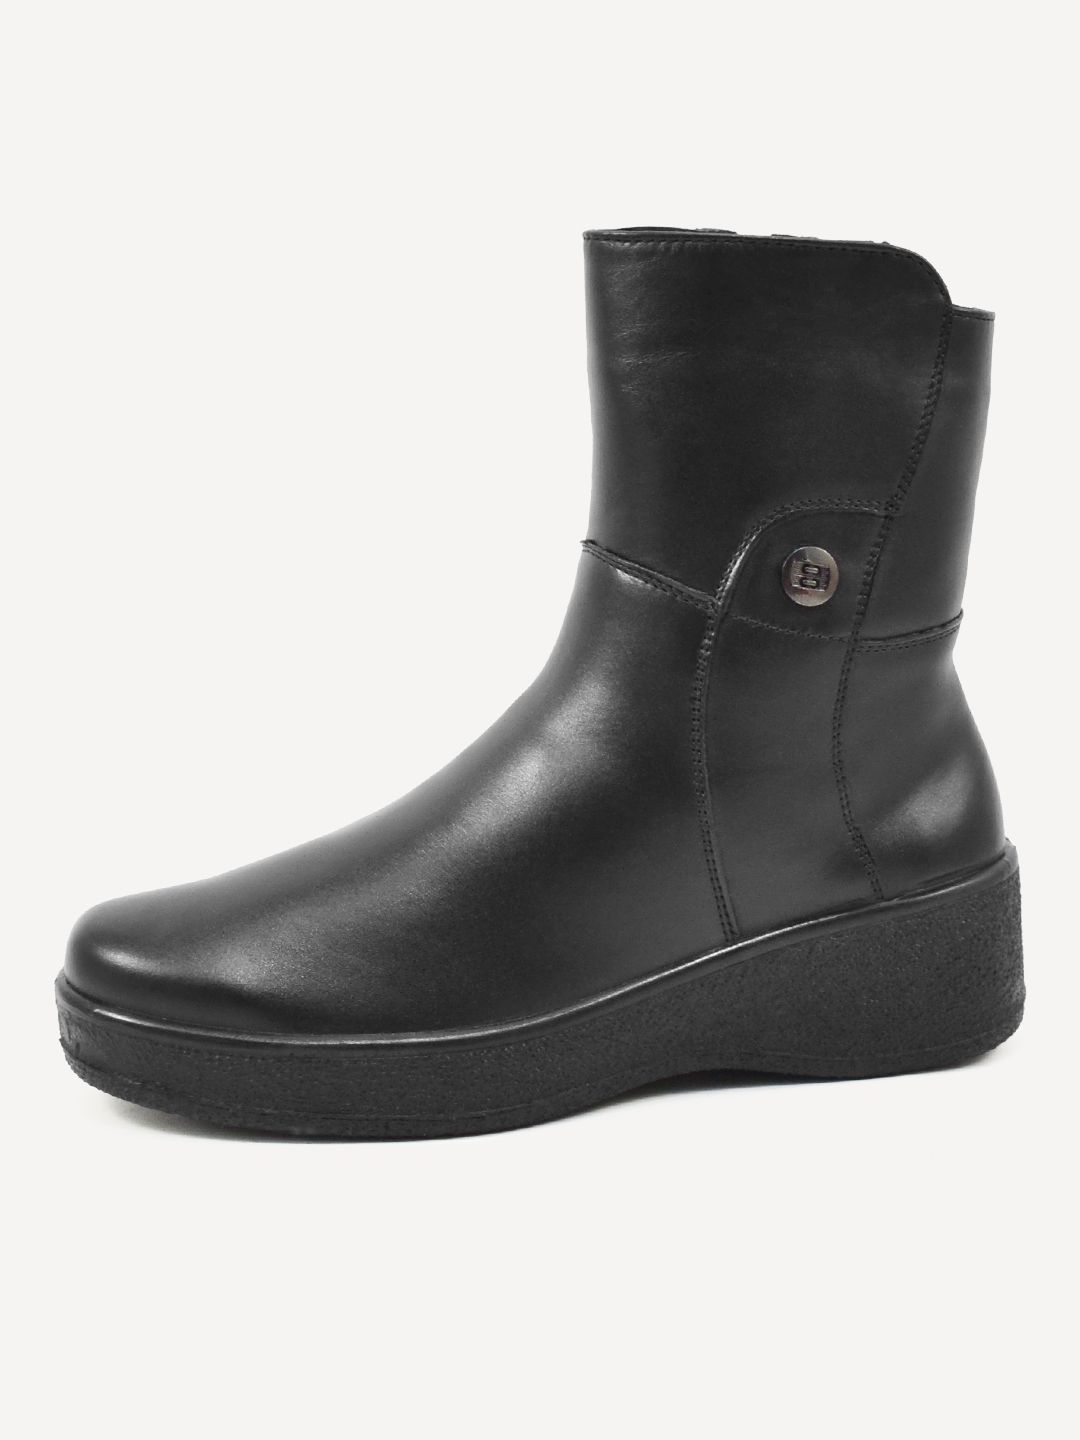 Полусапоги женские Melitta Shoes 5581/3 черные 38 RU